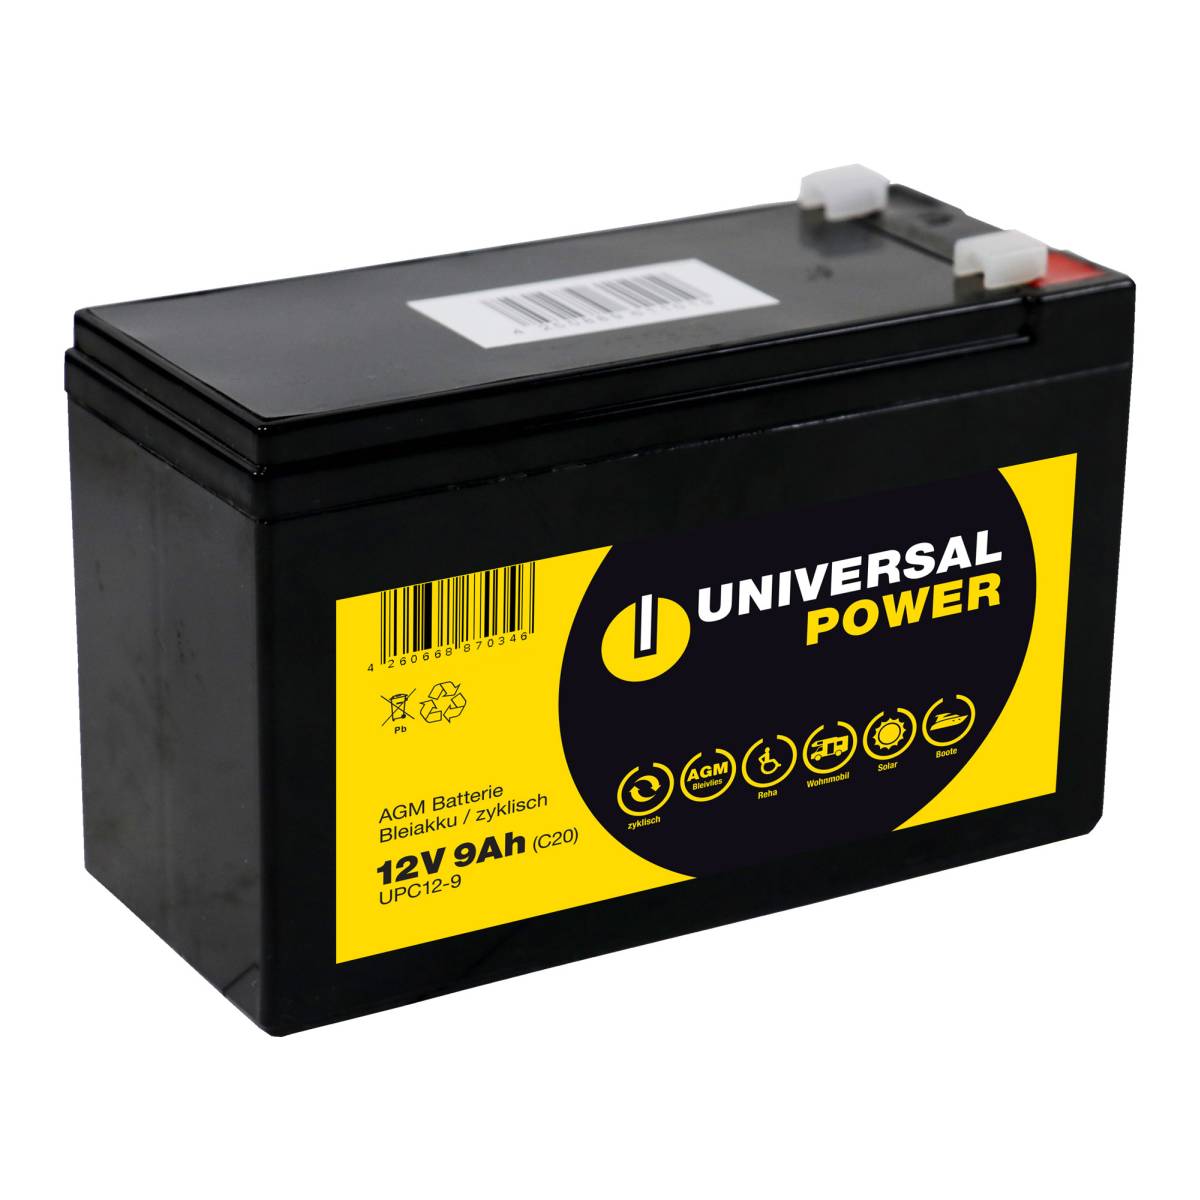 Universal Power UPA12-100 Solar Batterie Wohnmobilbatterie 12V 100Ah  zyklenfest